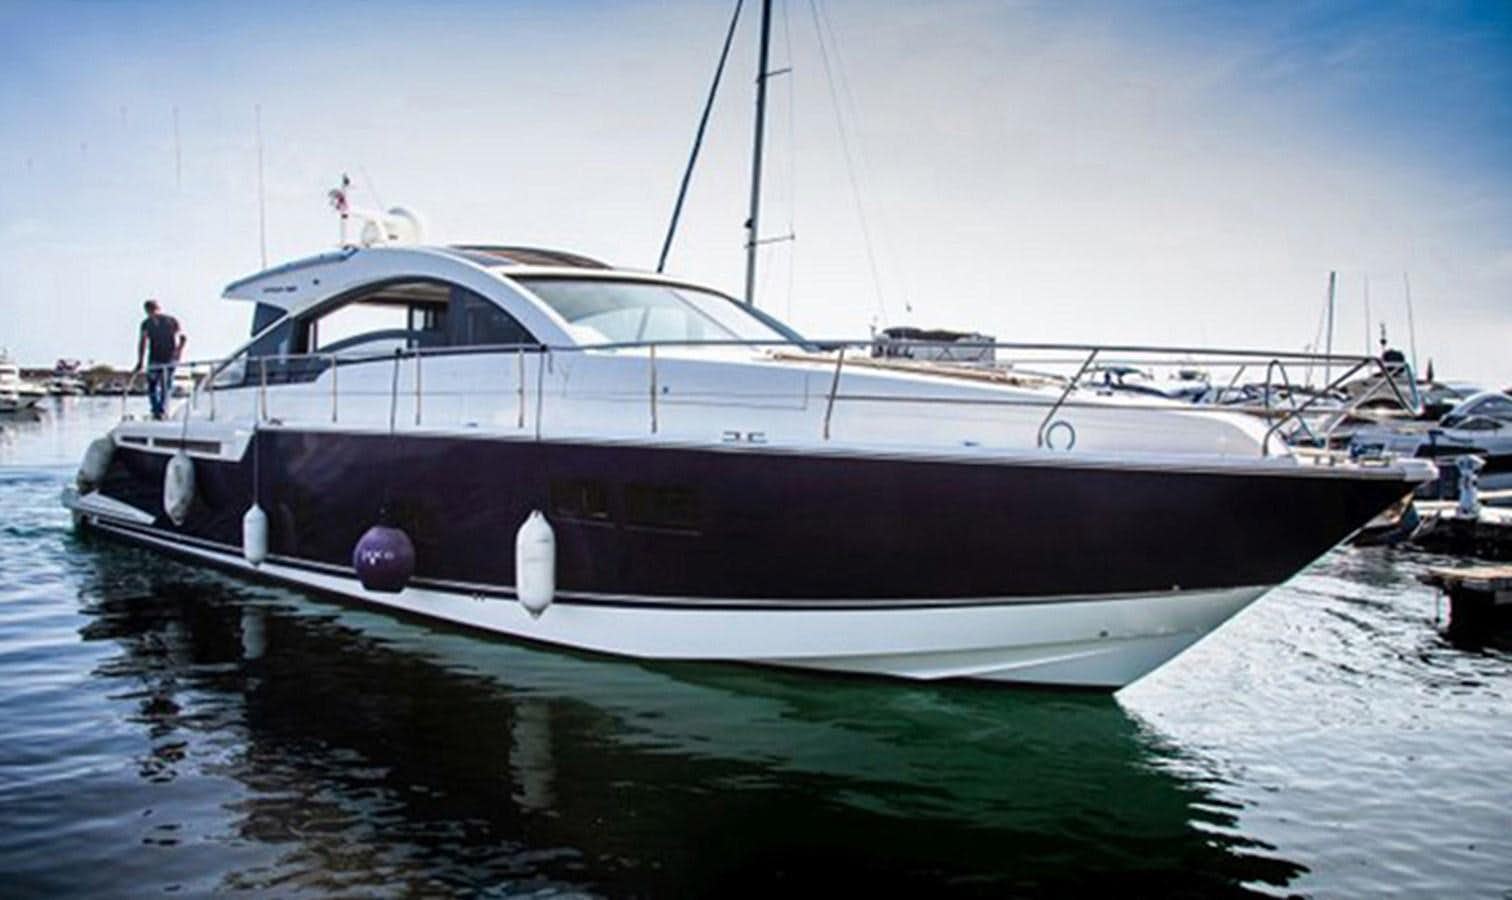 Fairline targa 58 gt
Yacht for Sale